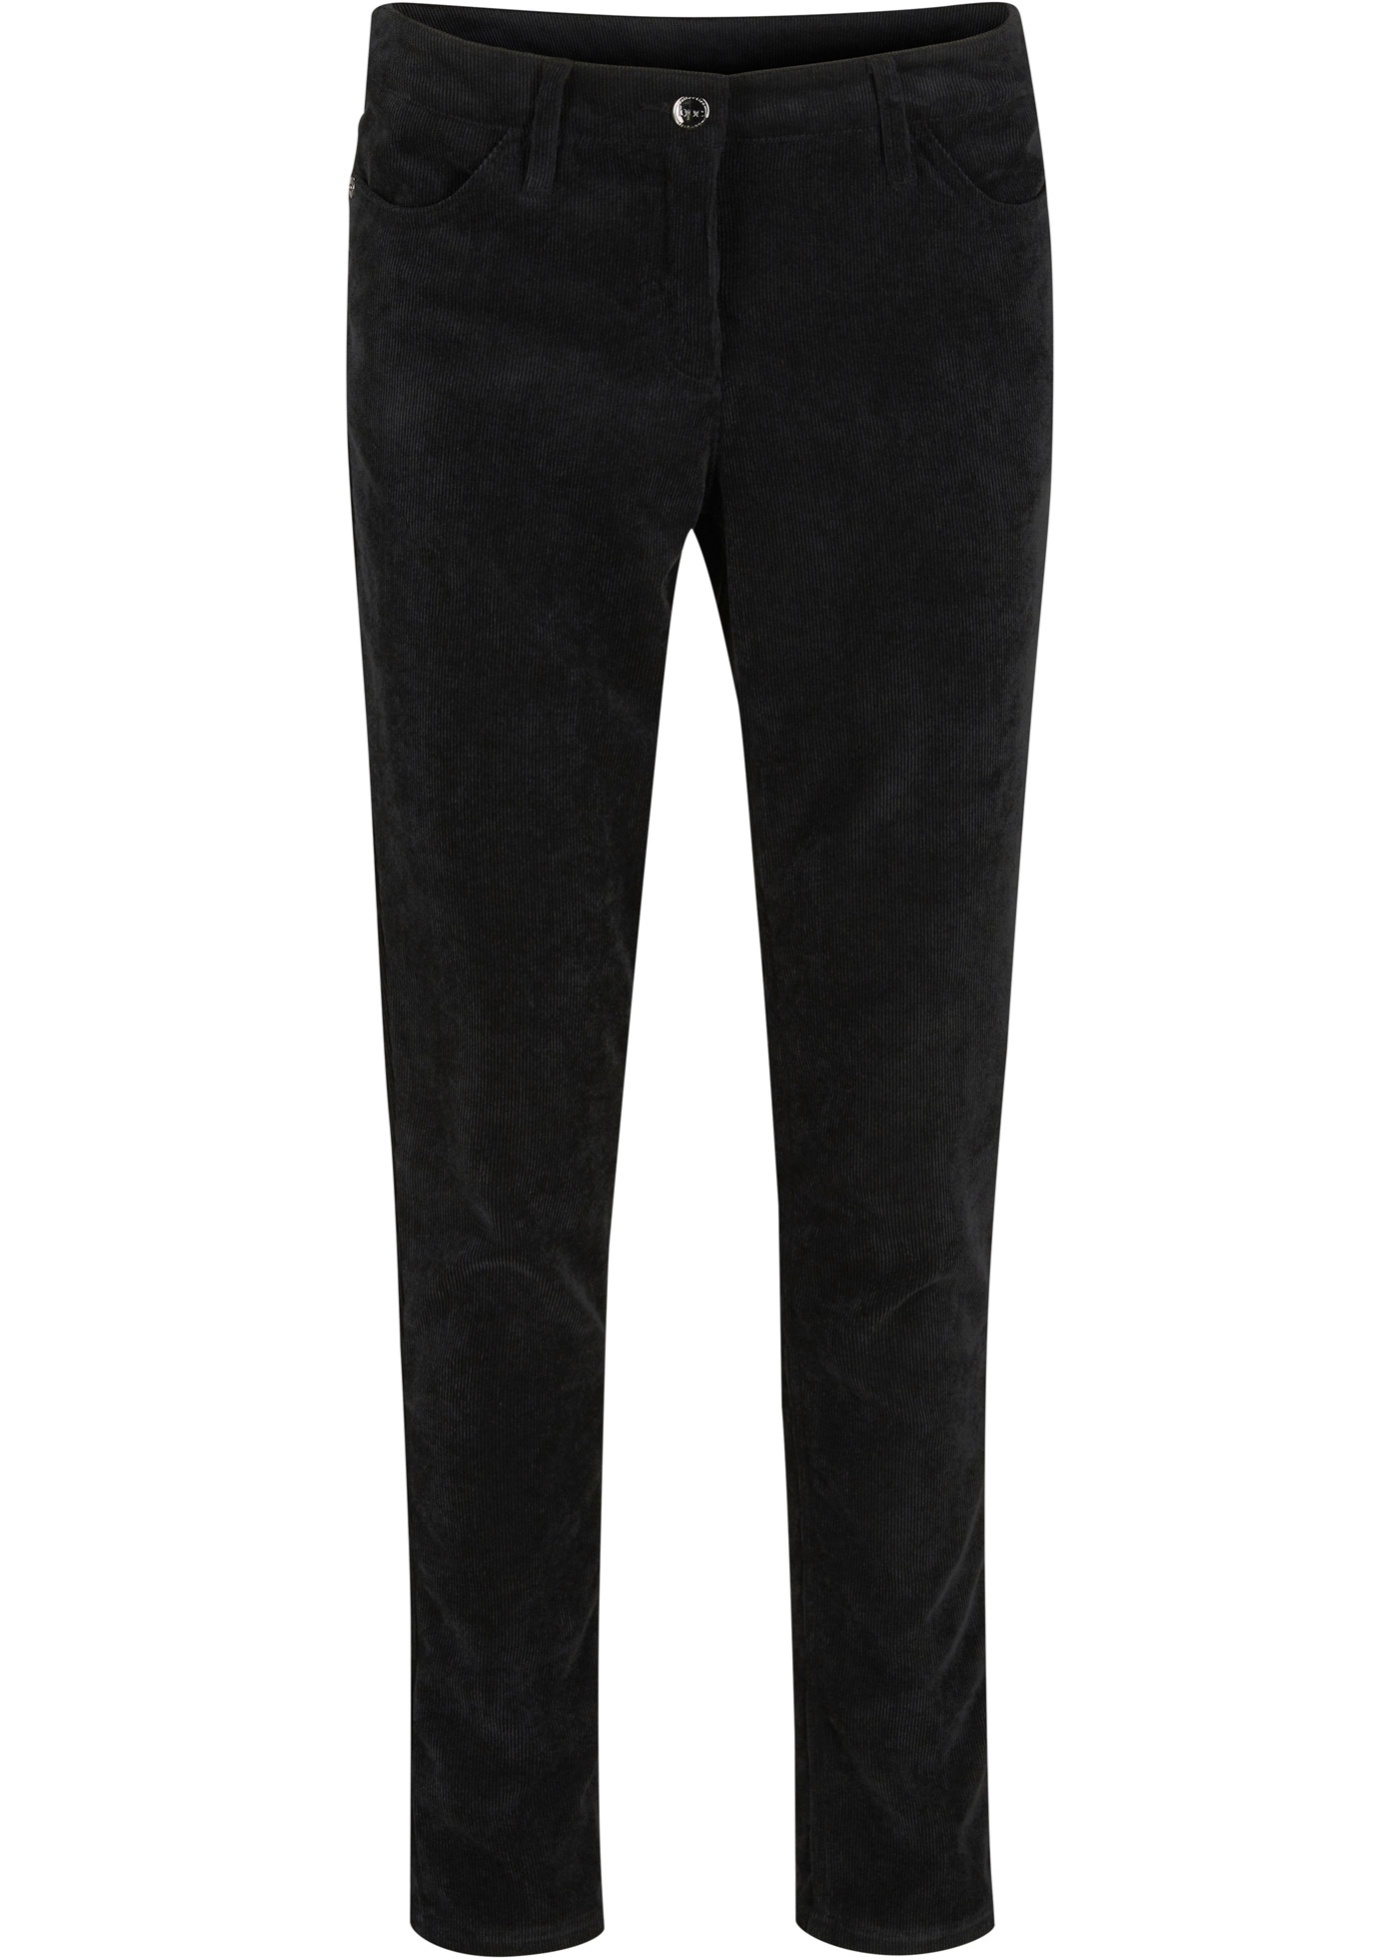 Pantaloni di velluto elasticizzato slim fit (Nero) - bpc bonprix collection